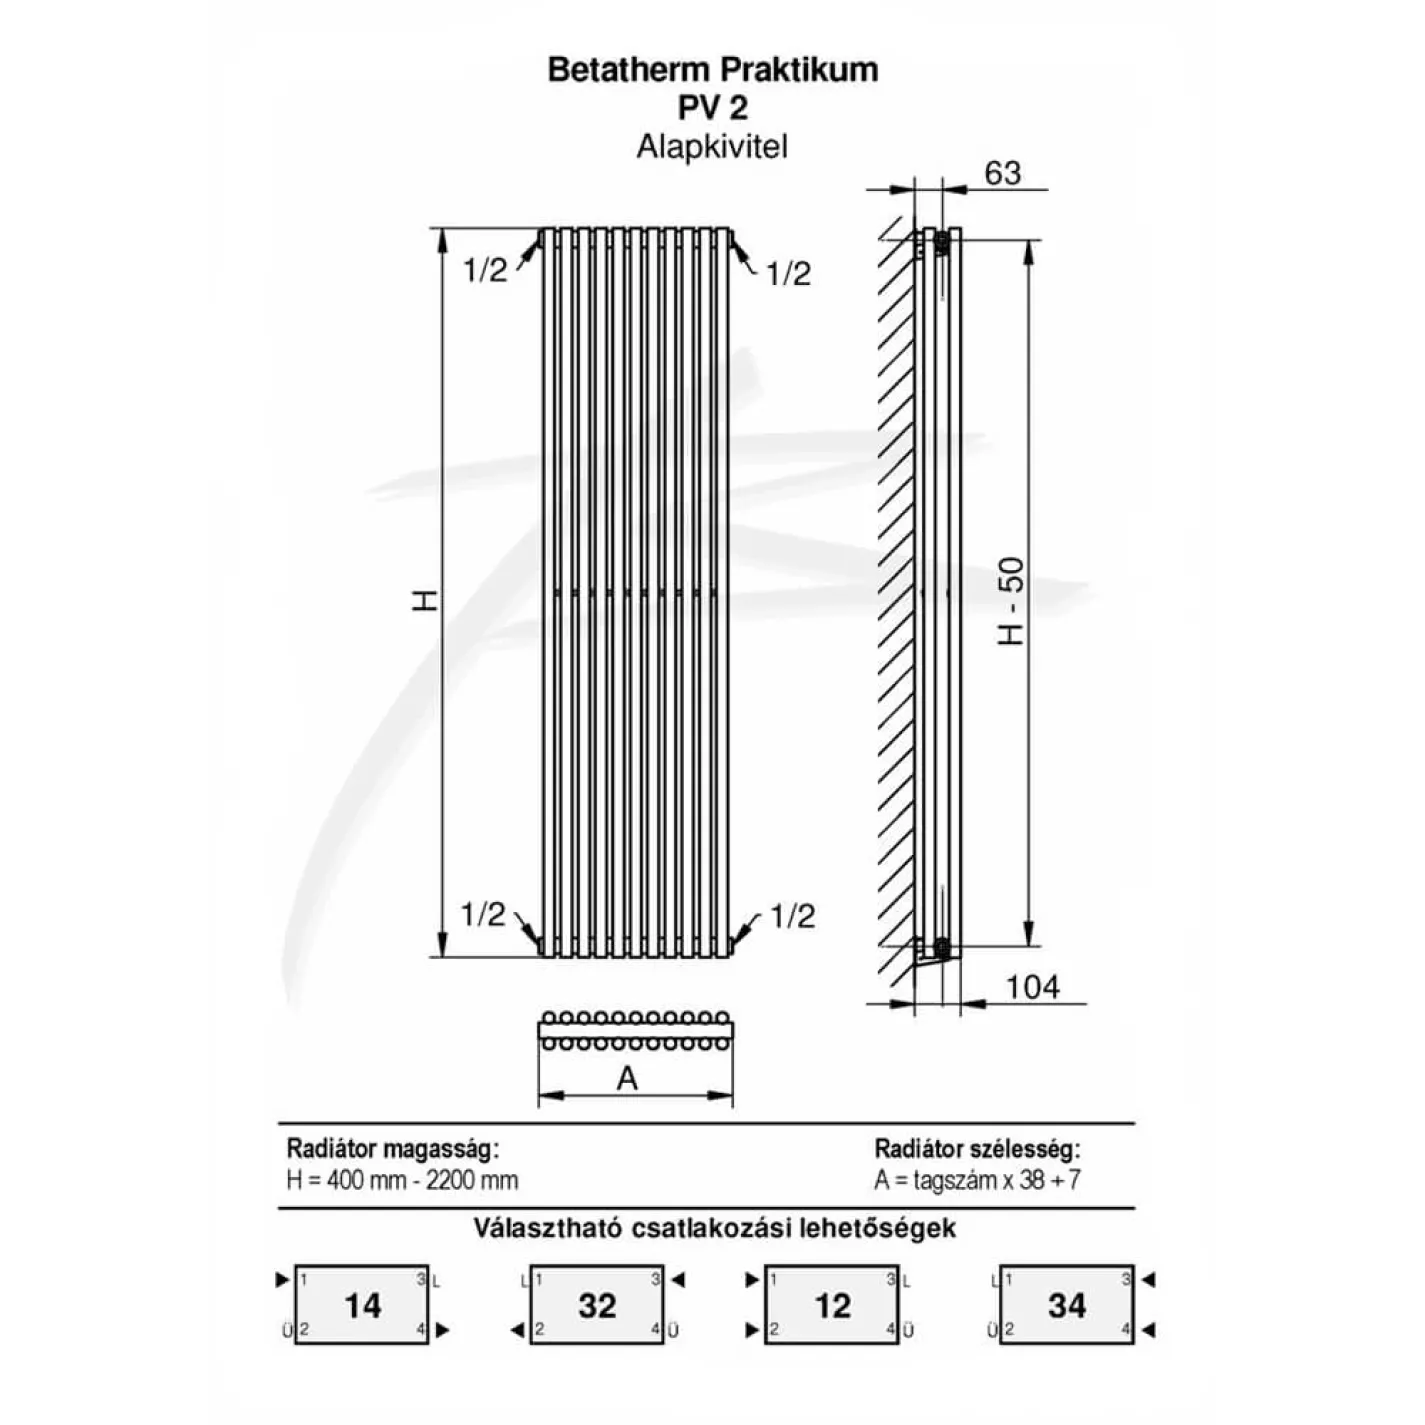 Трубчастый радиатор Betatherm Praktikum 2 1800x425x104 мм вертикальный RAL9016 - Фото 3